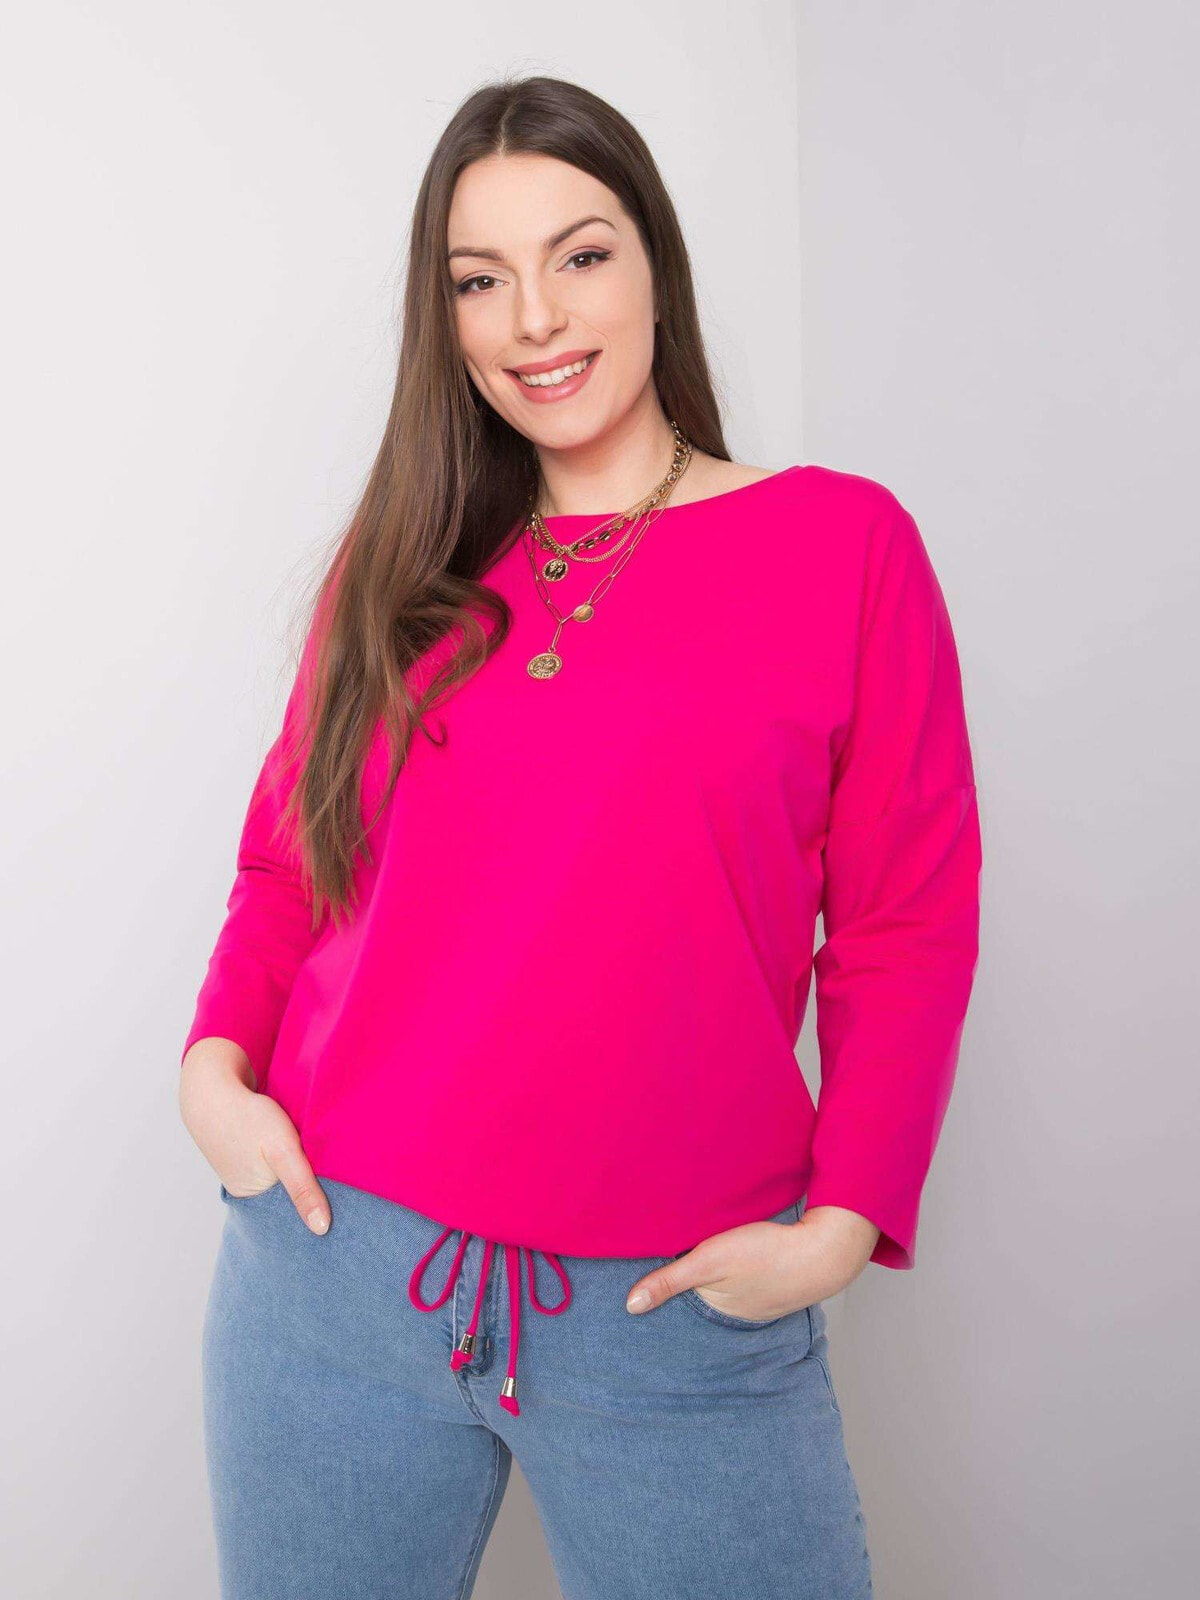 Женская блузка с длинным рукавом свободного кроя на завязках розовая Factory Price